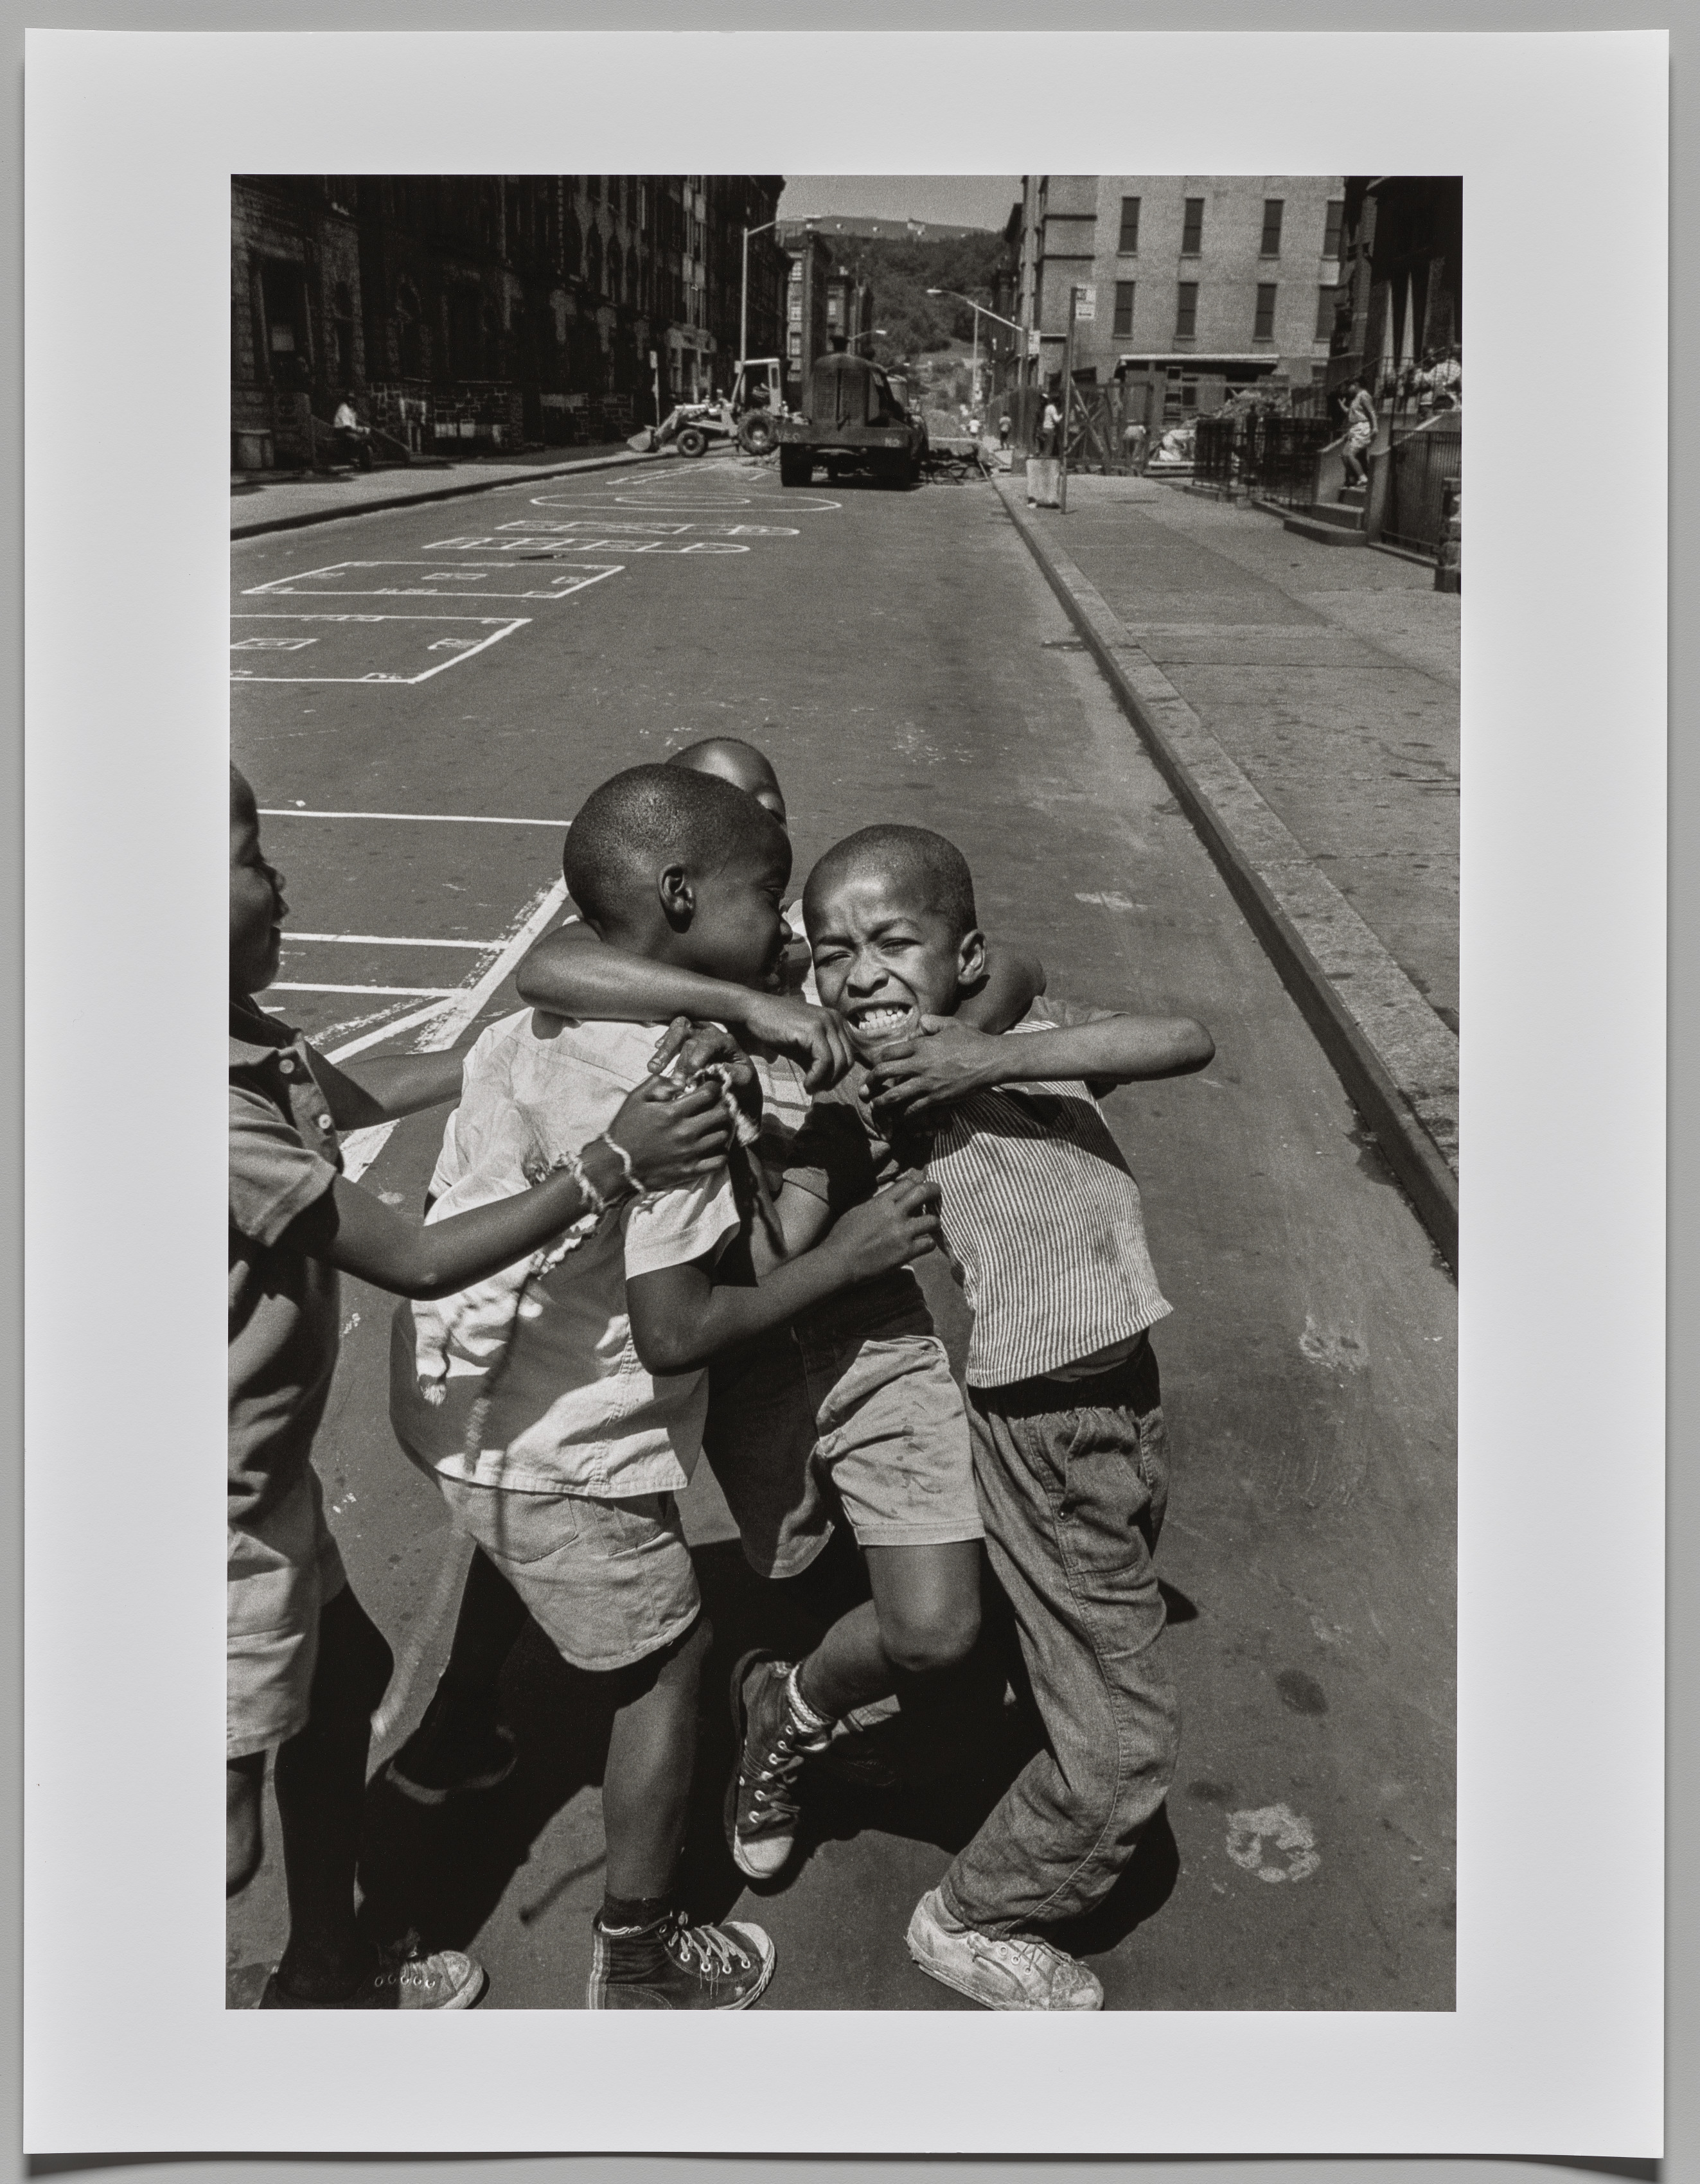 Kids on the Street Fighting, Harlem, New York, September